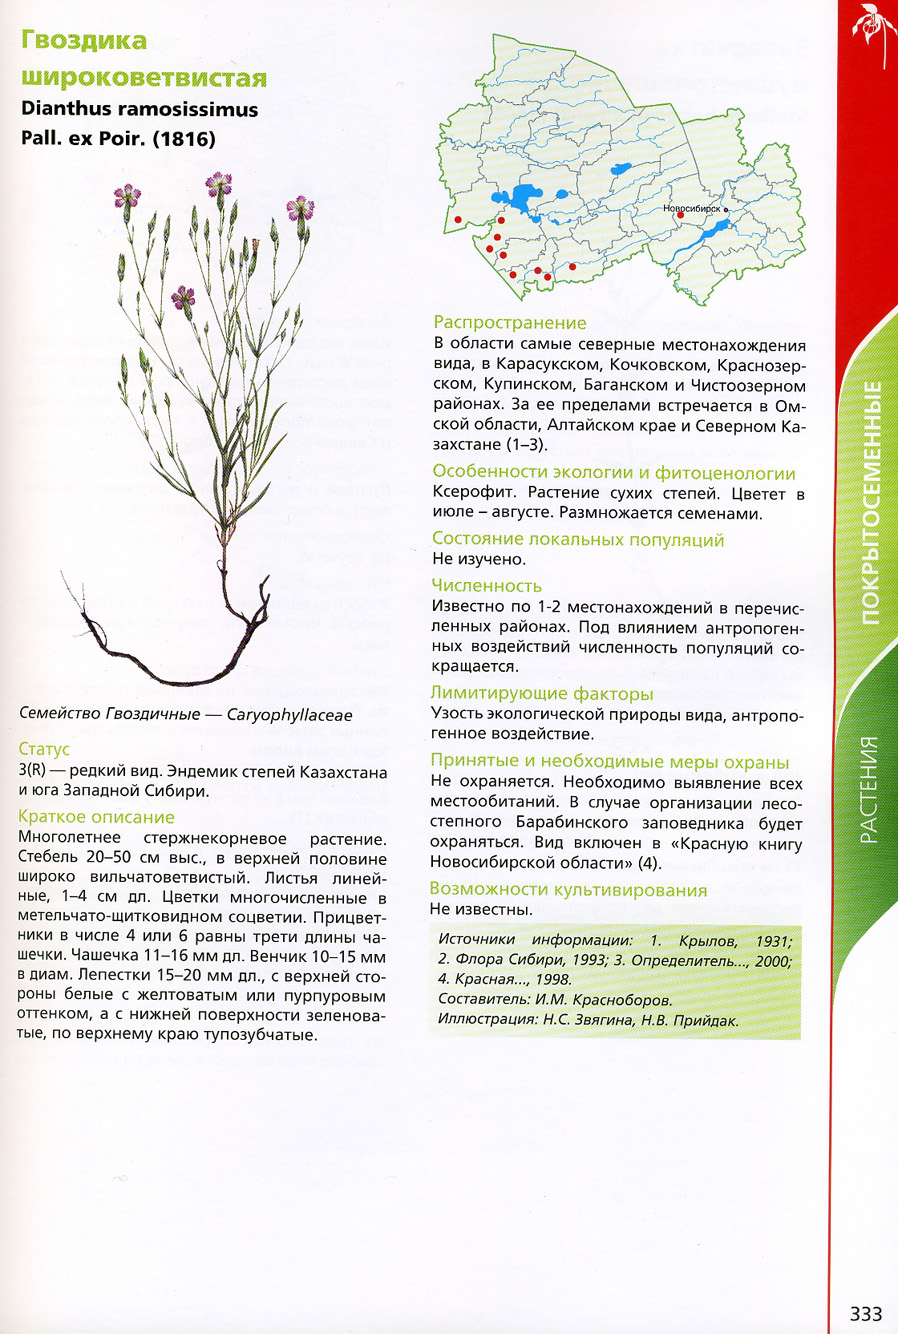 Гвоздика широковетвистая — Dianthus ramosissimus